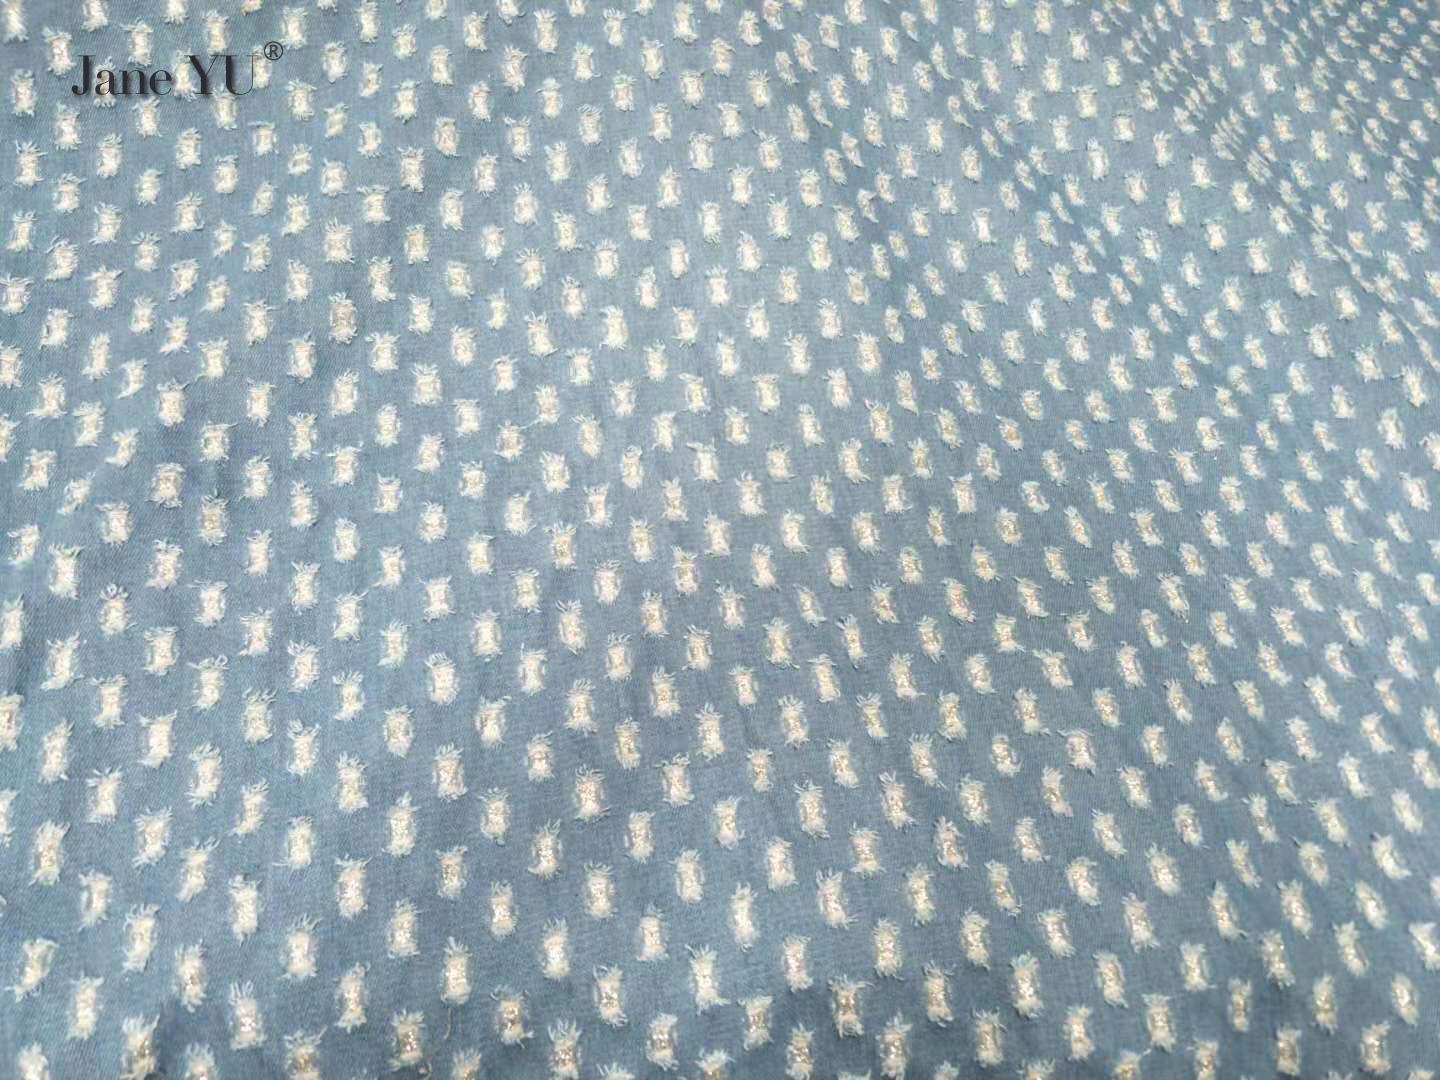 JaneYU Geometric Pattern New Broken Hole Patch Wash Denim Fabric Glitter Powder Shoes Fabric Bag Doll DIY Cloth